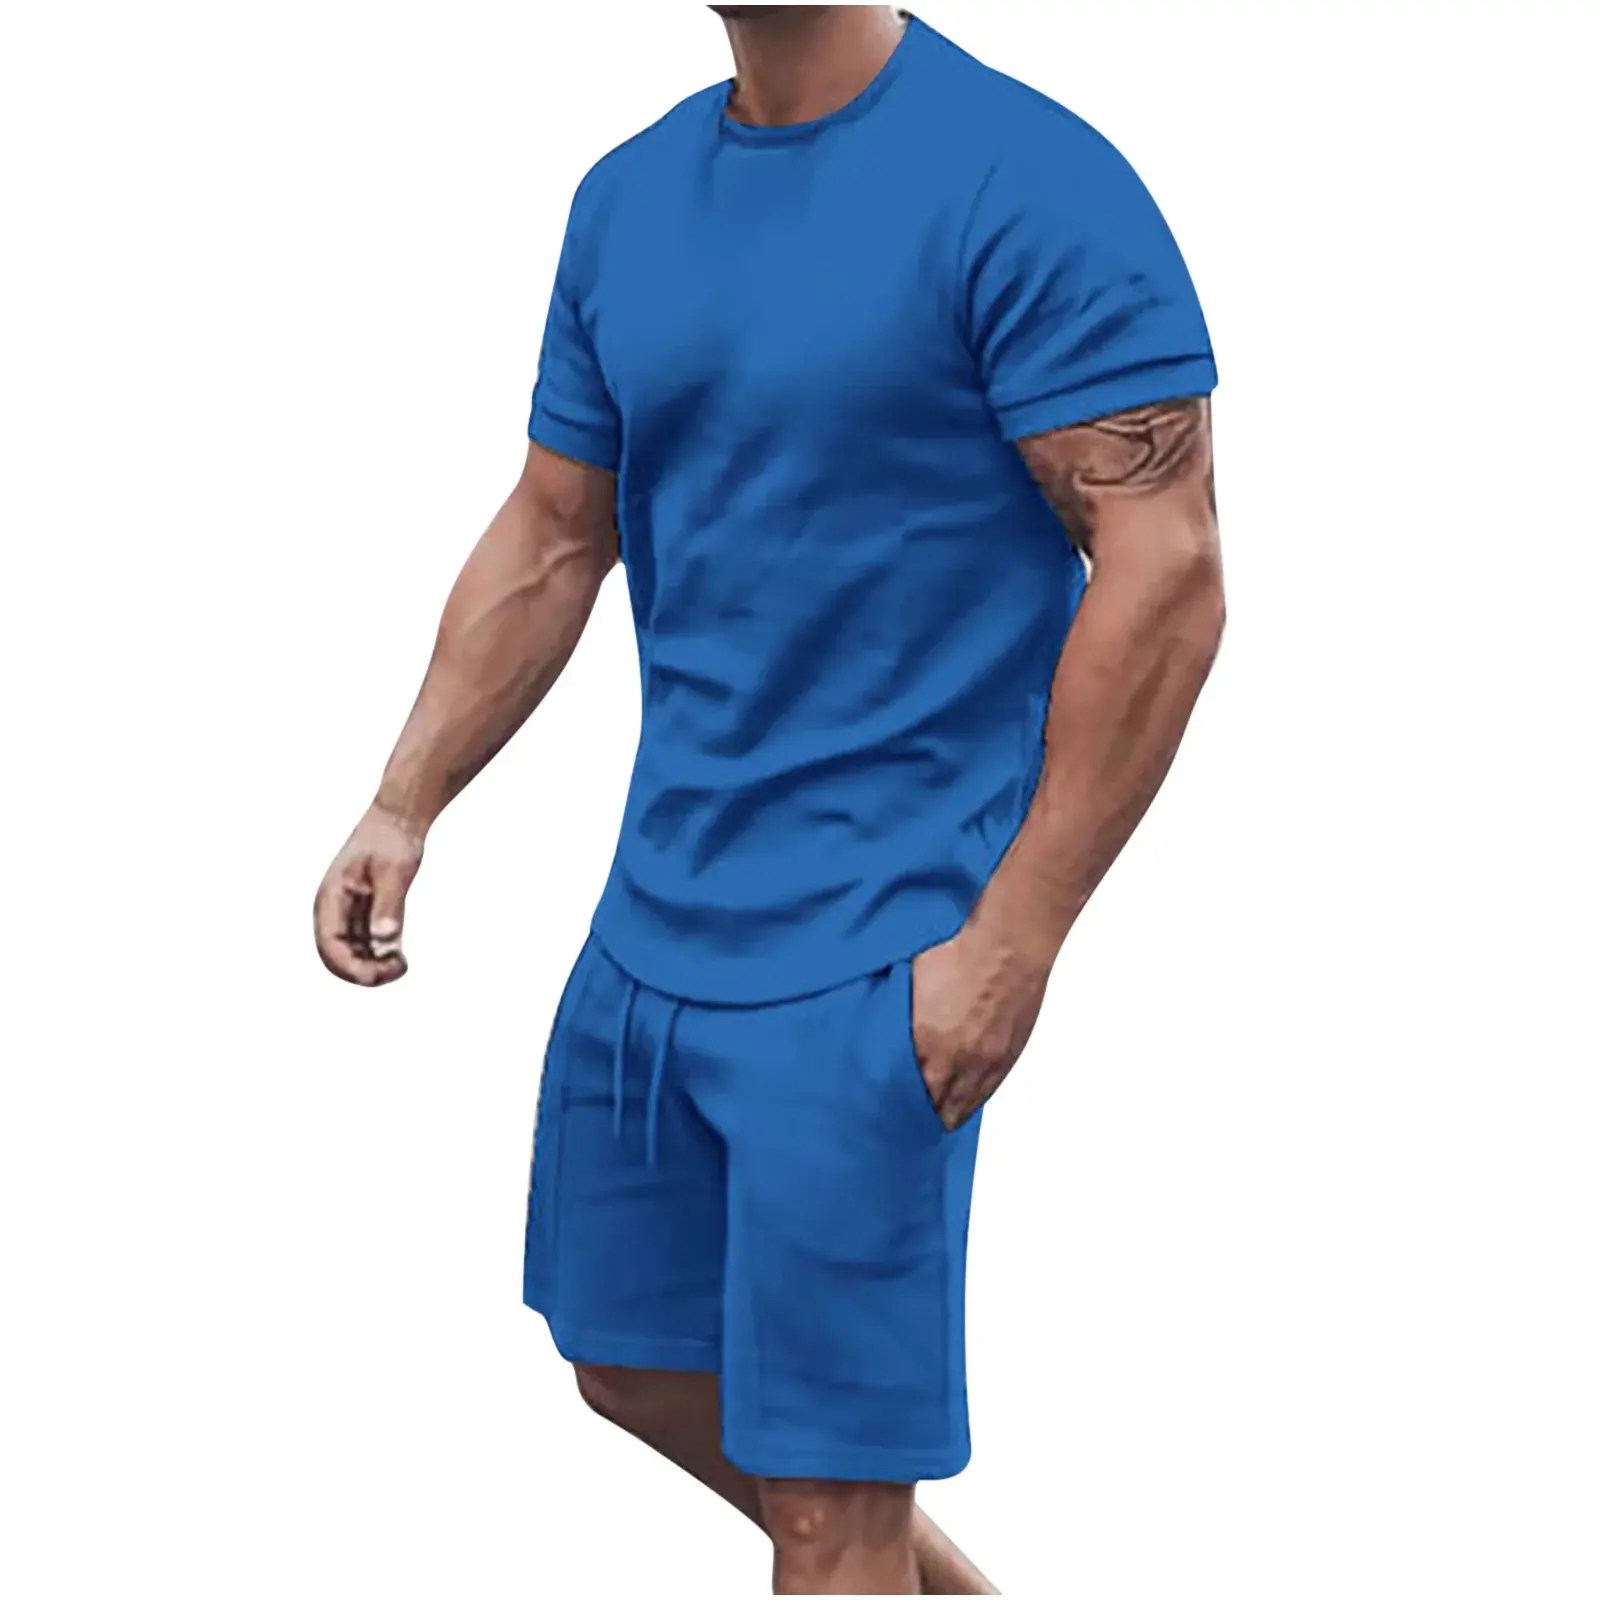 सांस लेने योग्य 2024 कस्टम मेड हॉट सेल पुरुषों के स्ट्रीट वियर कपड़े यूएसए साइज पुरुषों के लिए भारी वजन वाली टी शर्ट और पुरुषों के लिए छोटा सेट